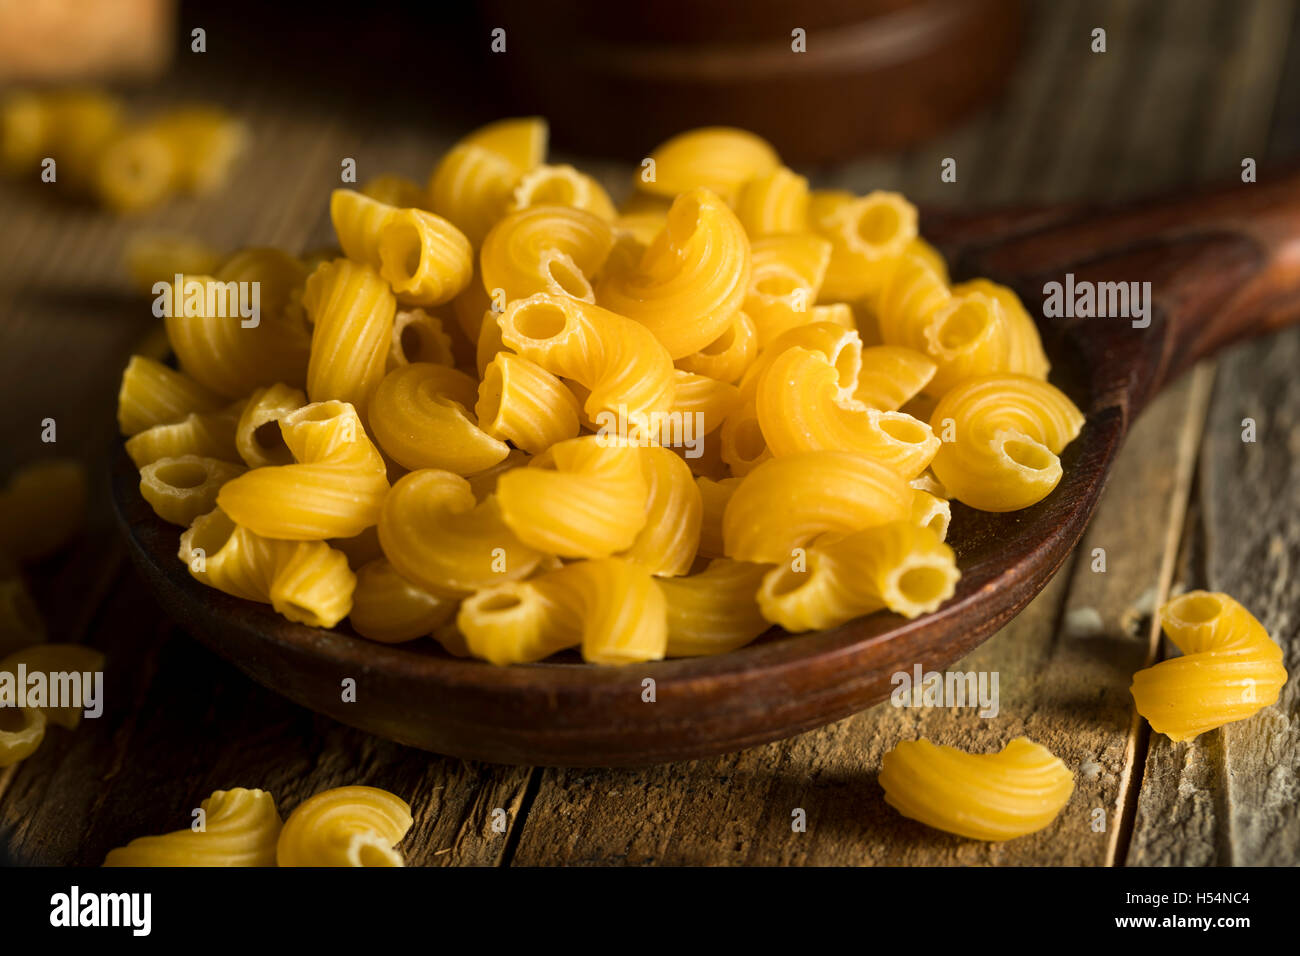 Macaroni au coude biologiques crus prête pour la cuisson Banque D'Images